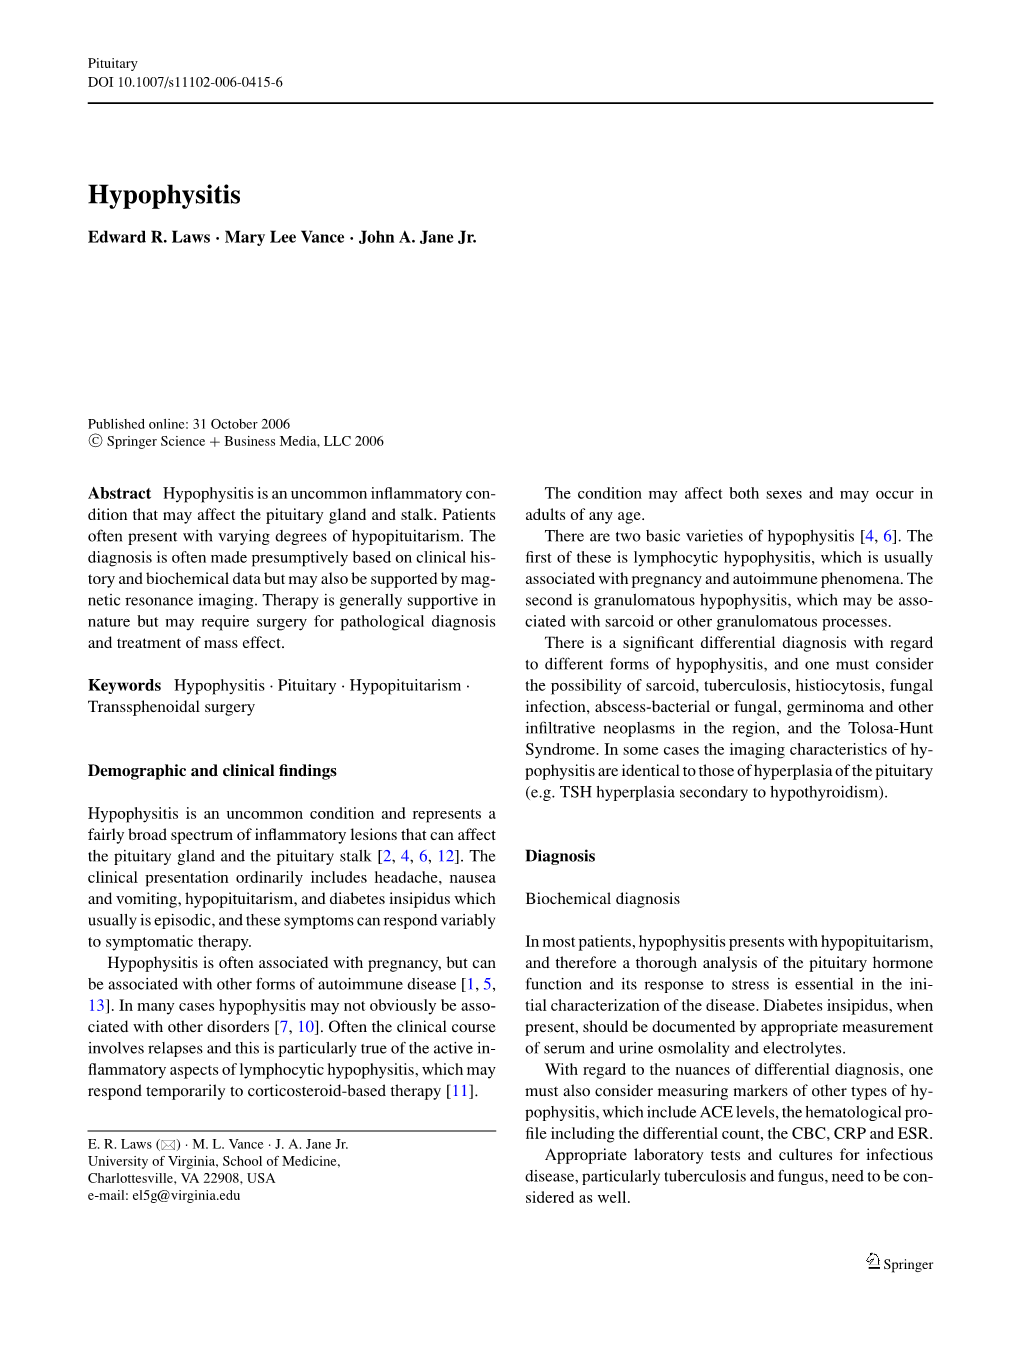 Hypophysitis